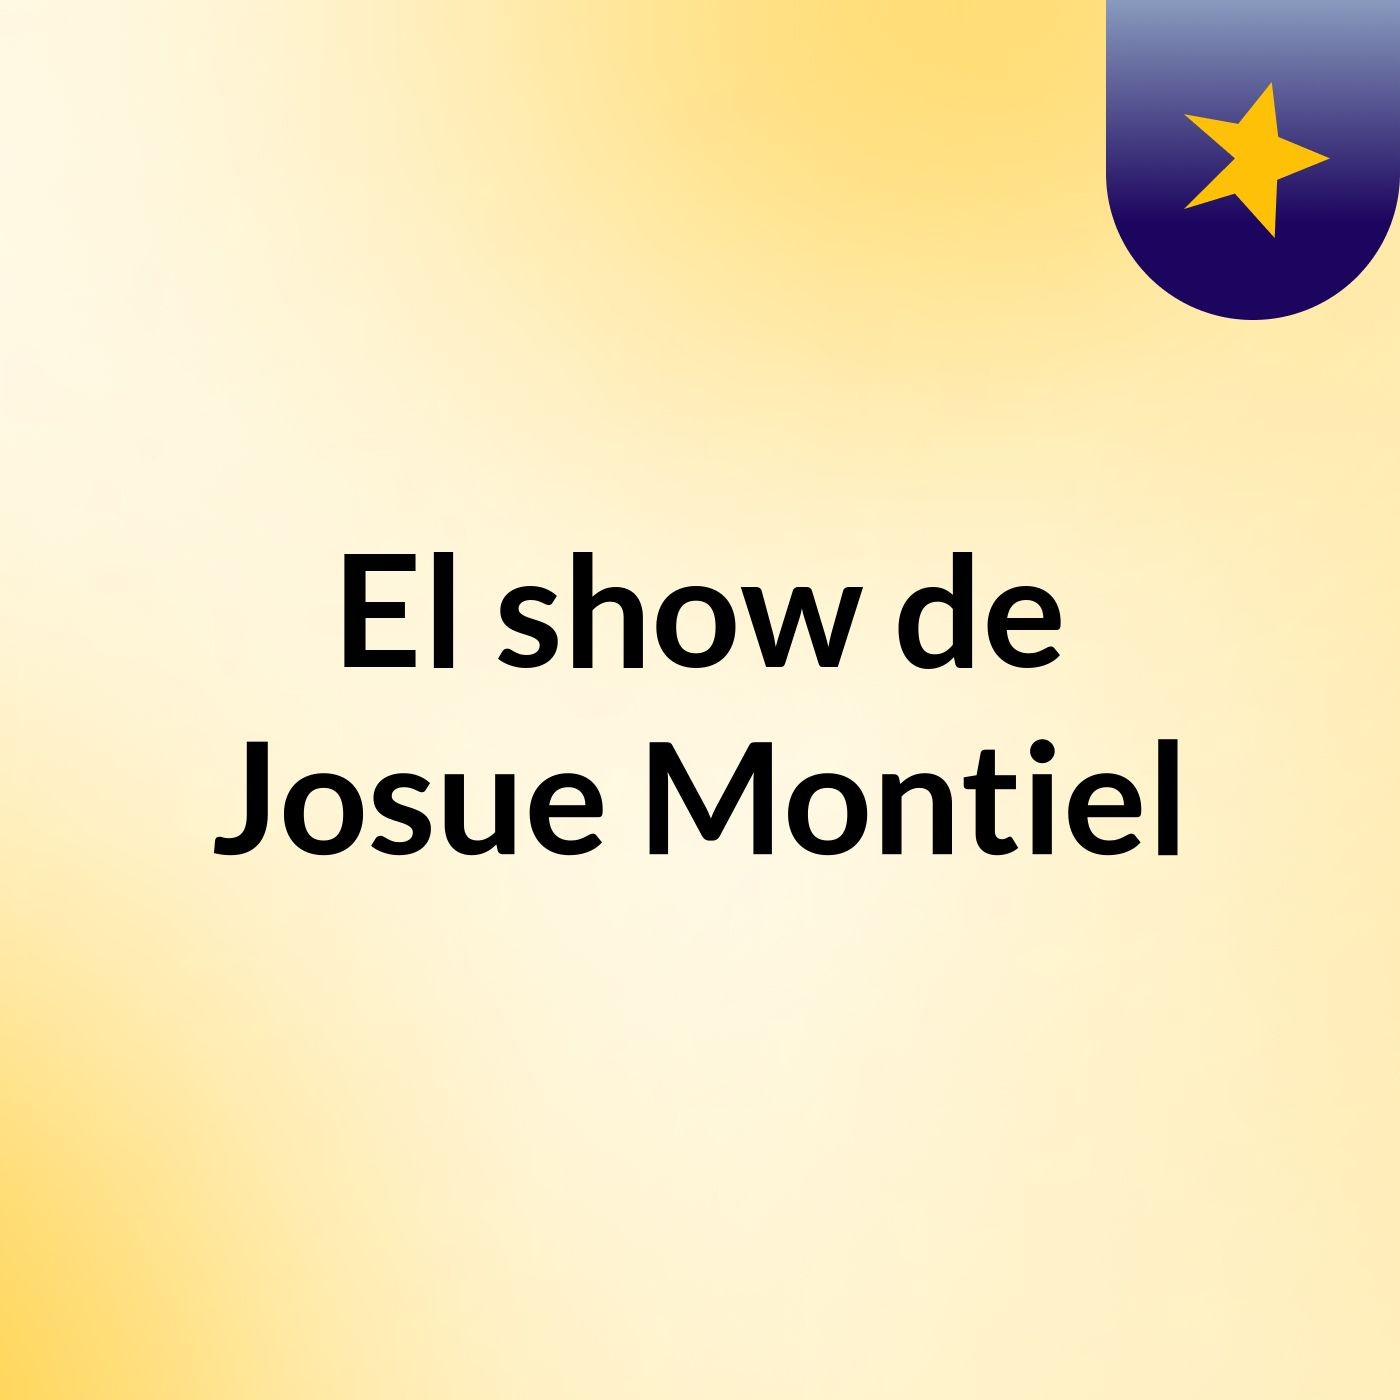 El show de Josue Montiel